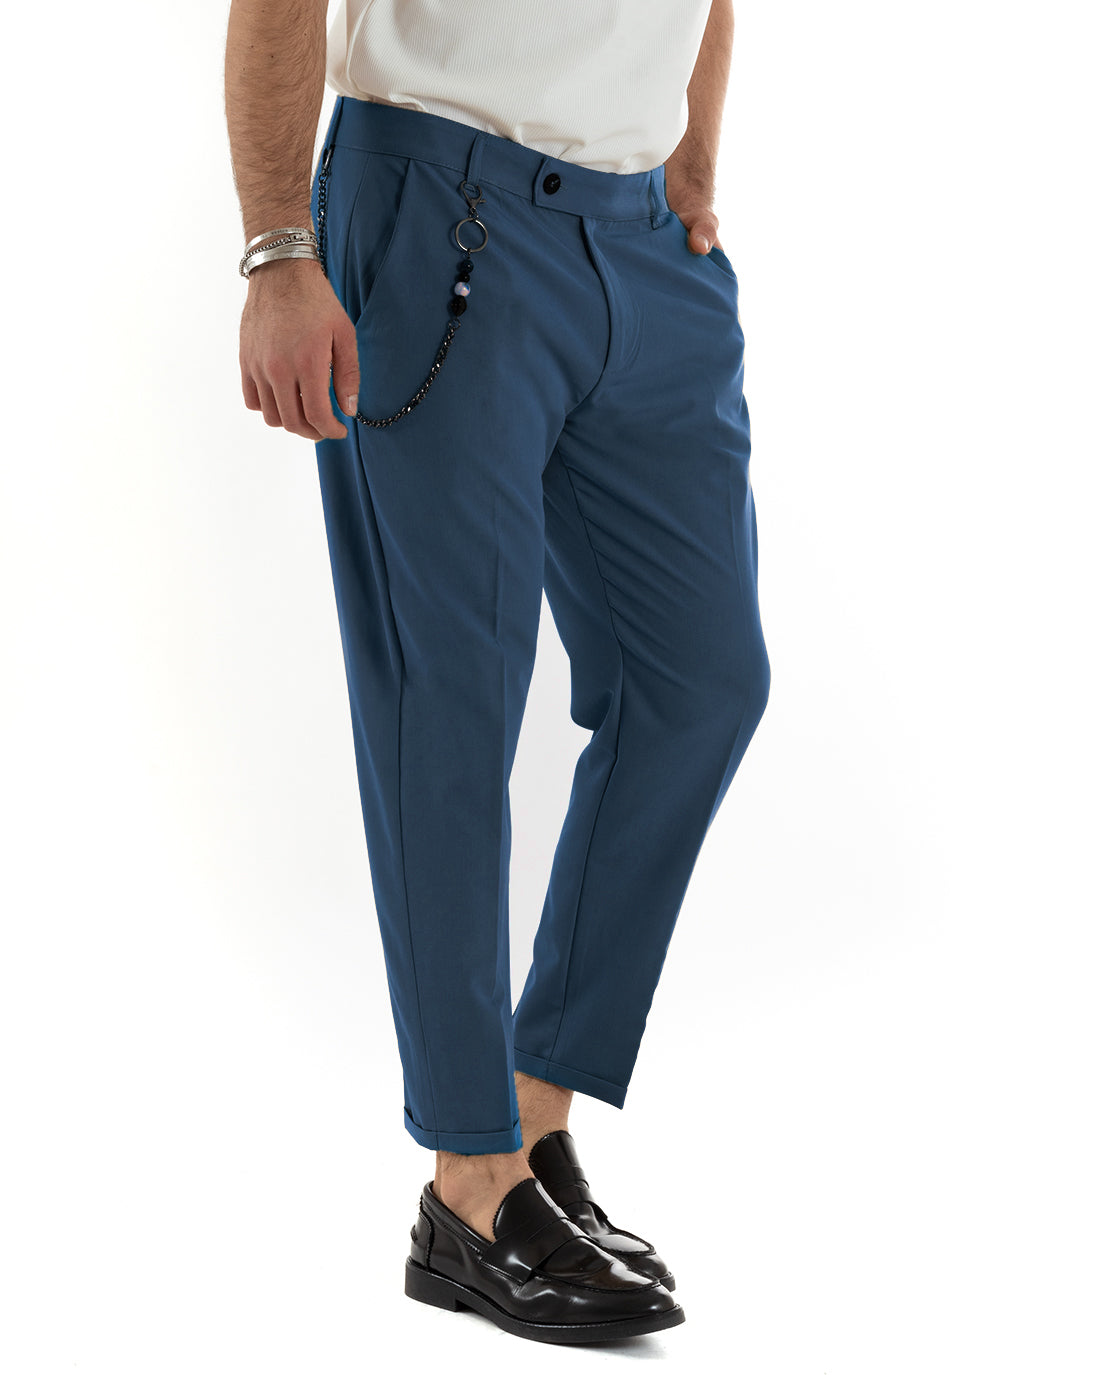 Pantaloni Uomo Viscosa Tasca America Classico Abbottonatura Allungata Casual Blu Royal GIOSAL-P5958A